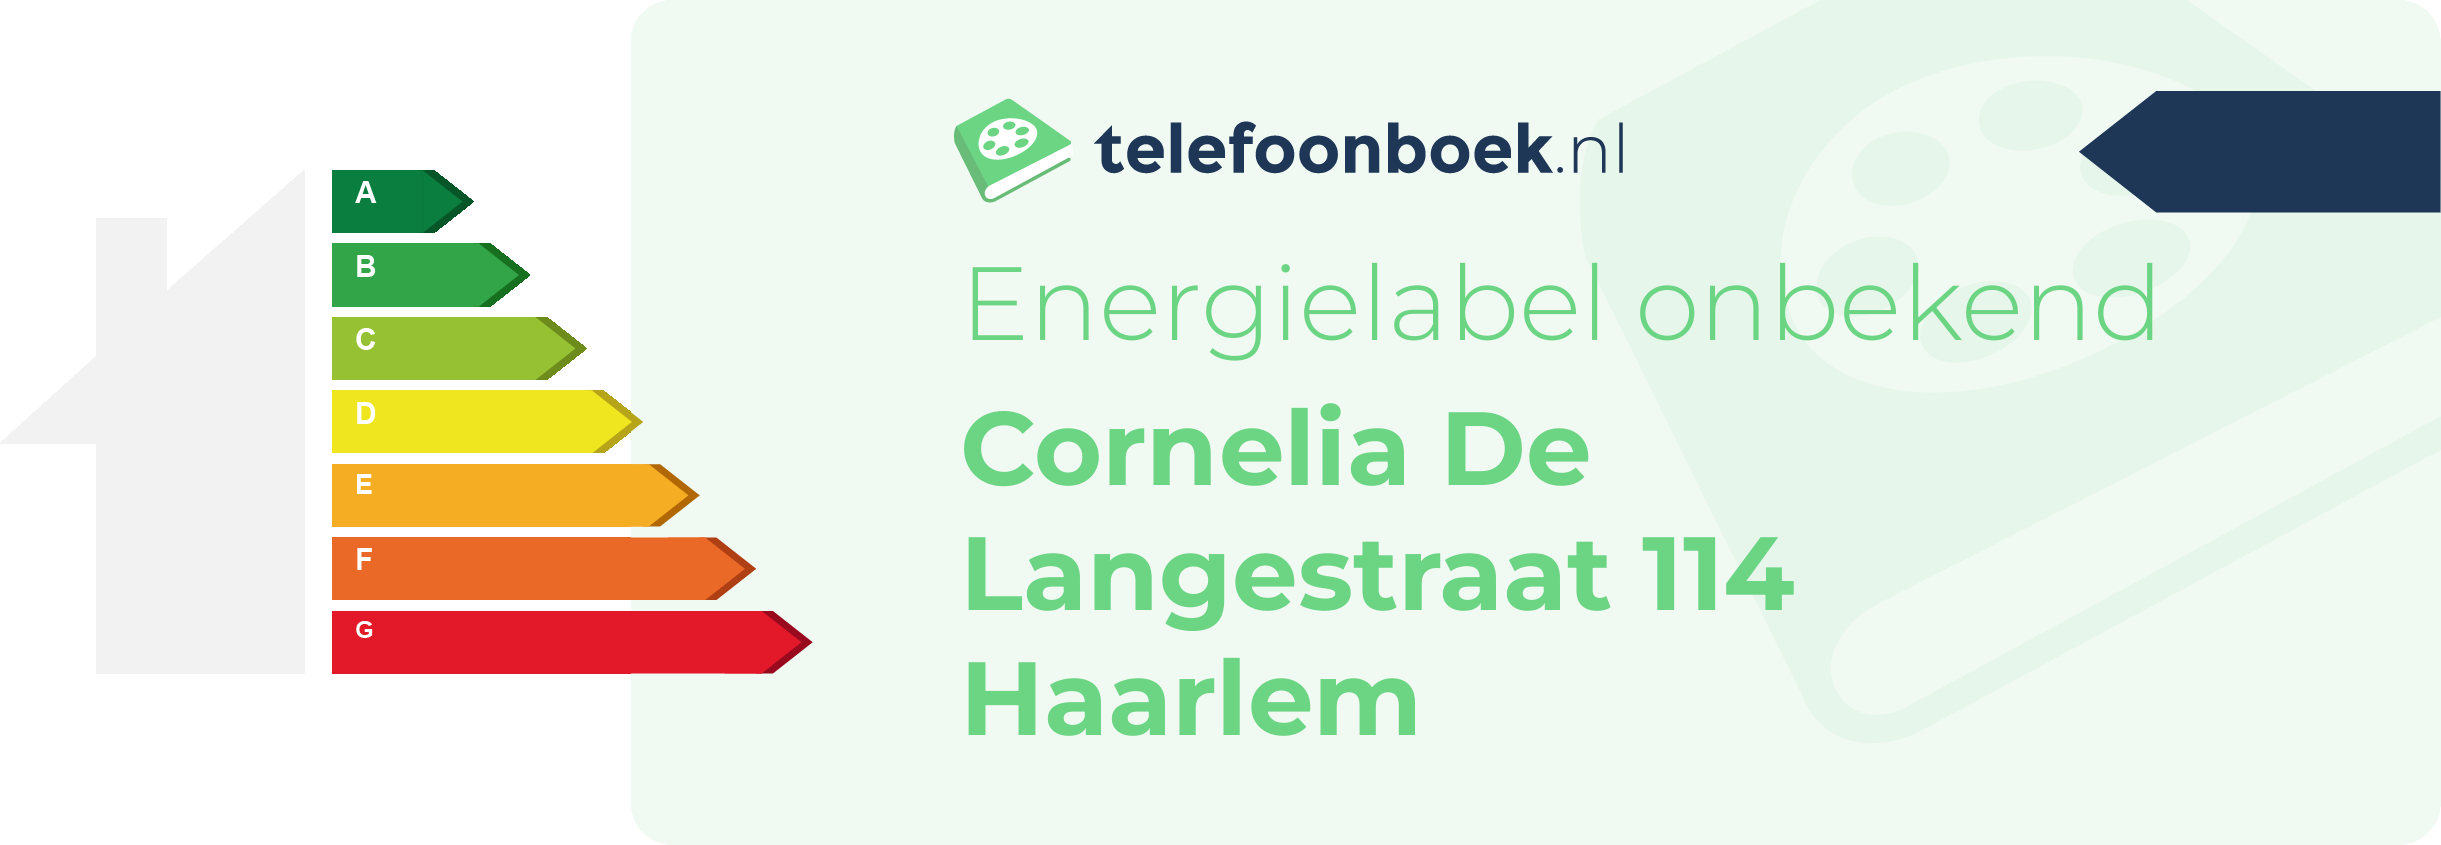 Energielabel Cornelia De Langestraat 114 Haarlem